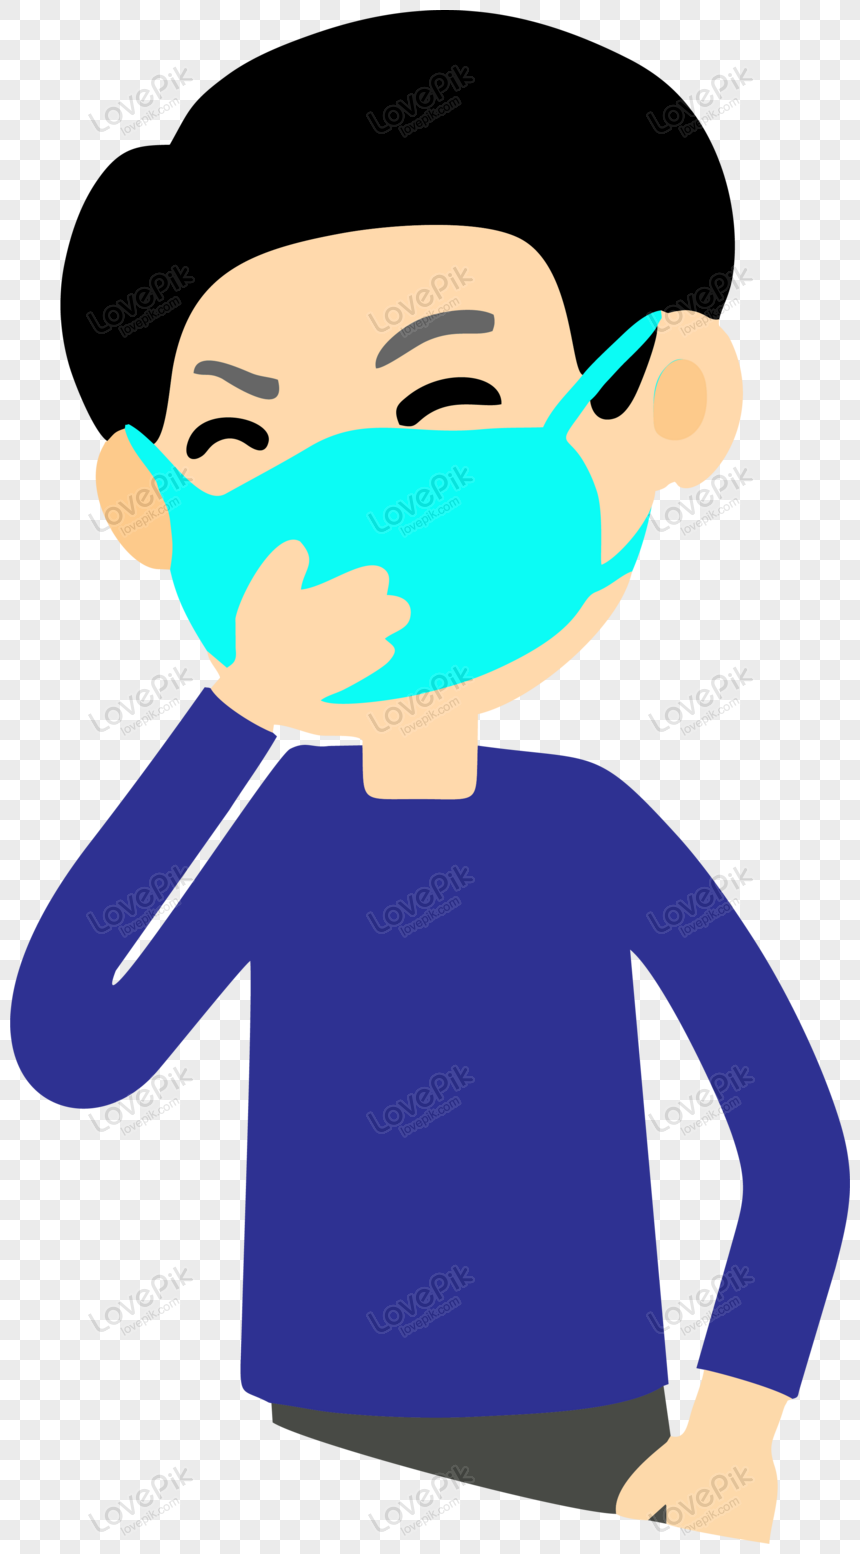 Boy Wearing Medical Mask Vector Illustration Png Image Psd File Free Download Lovepik 450070829